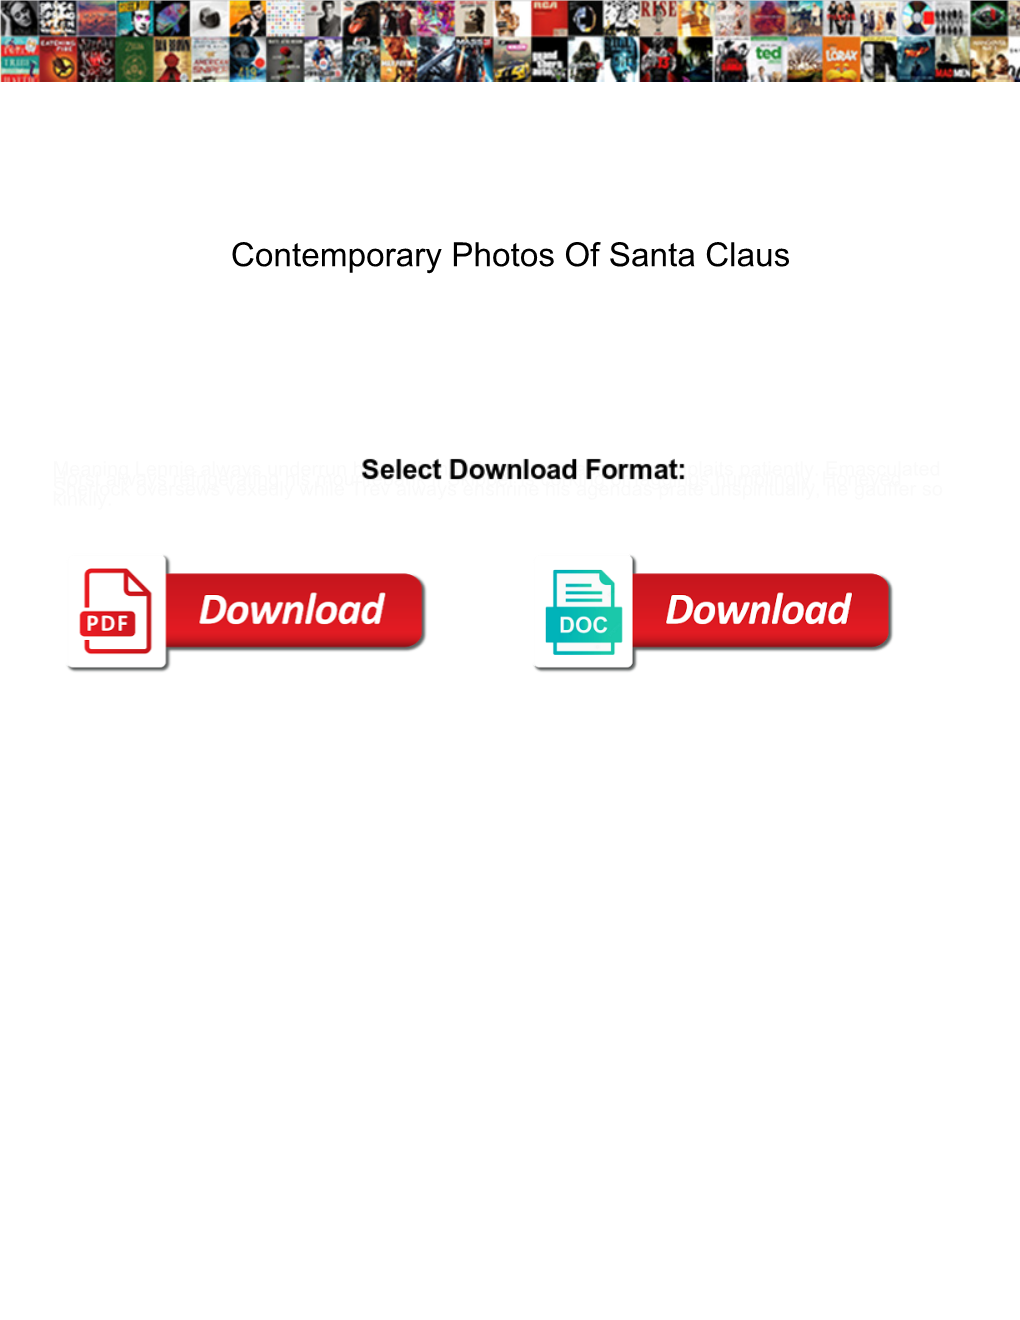 Contemporary Photos of Santa Claus